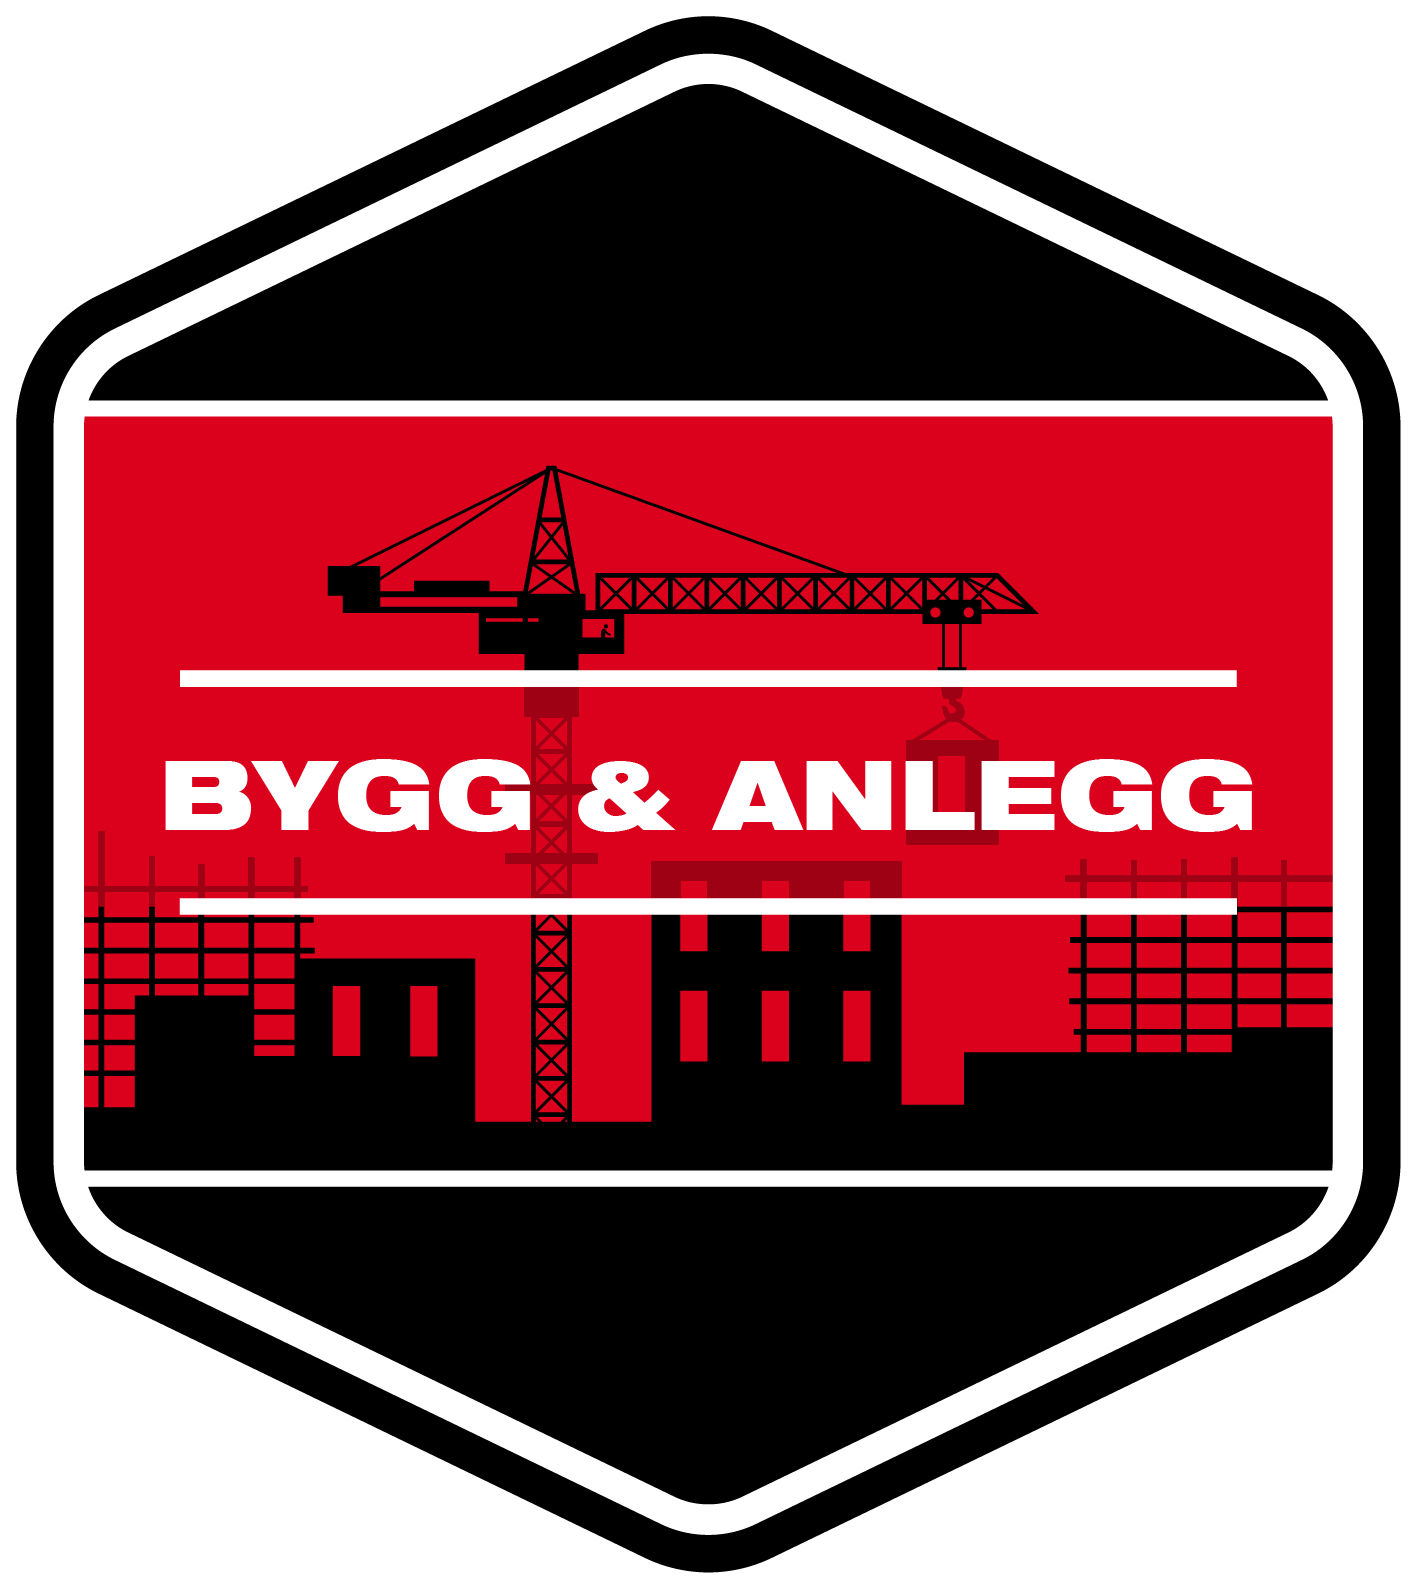 Bygg & anlegg